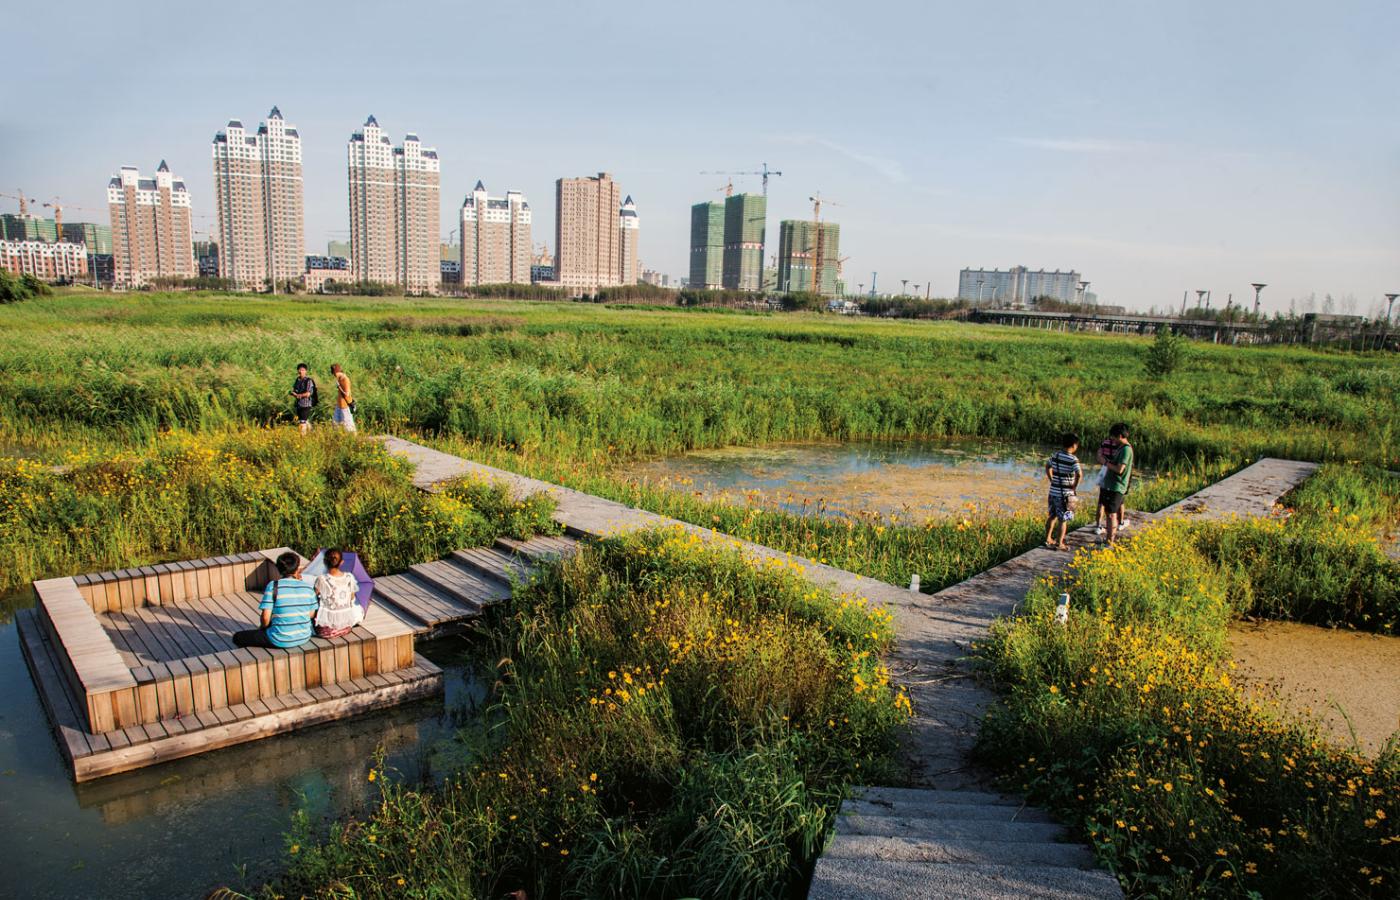 Magazynujący wodę deszczową Park Qunli, Harbin, Chiny.